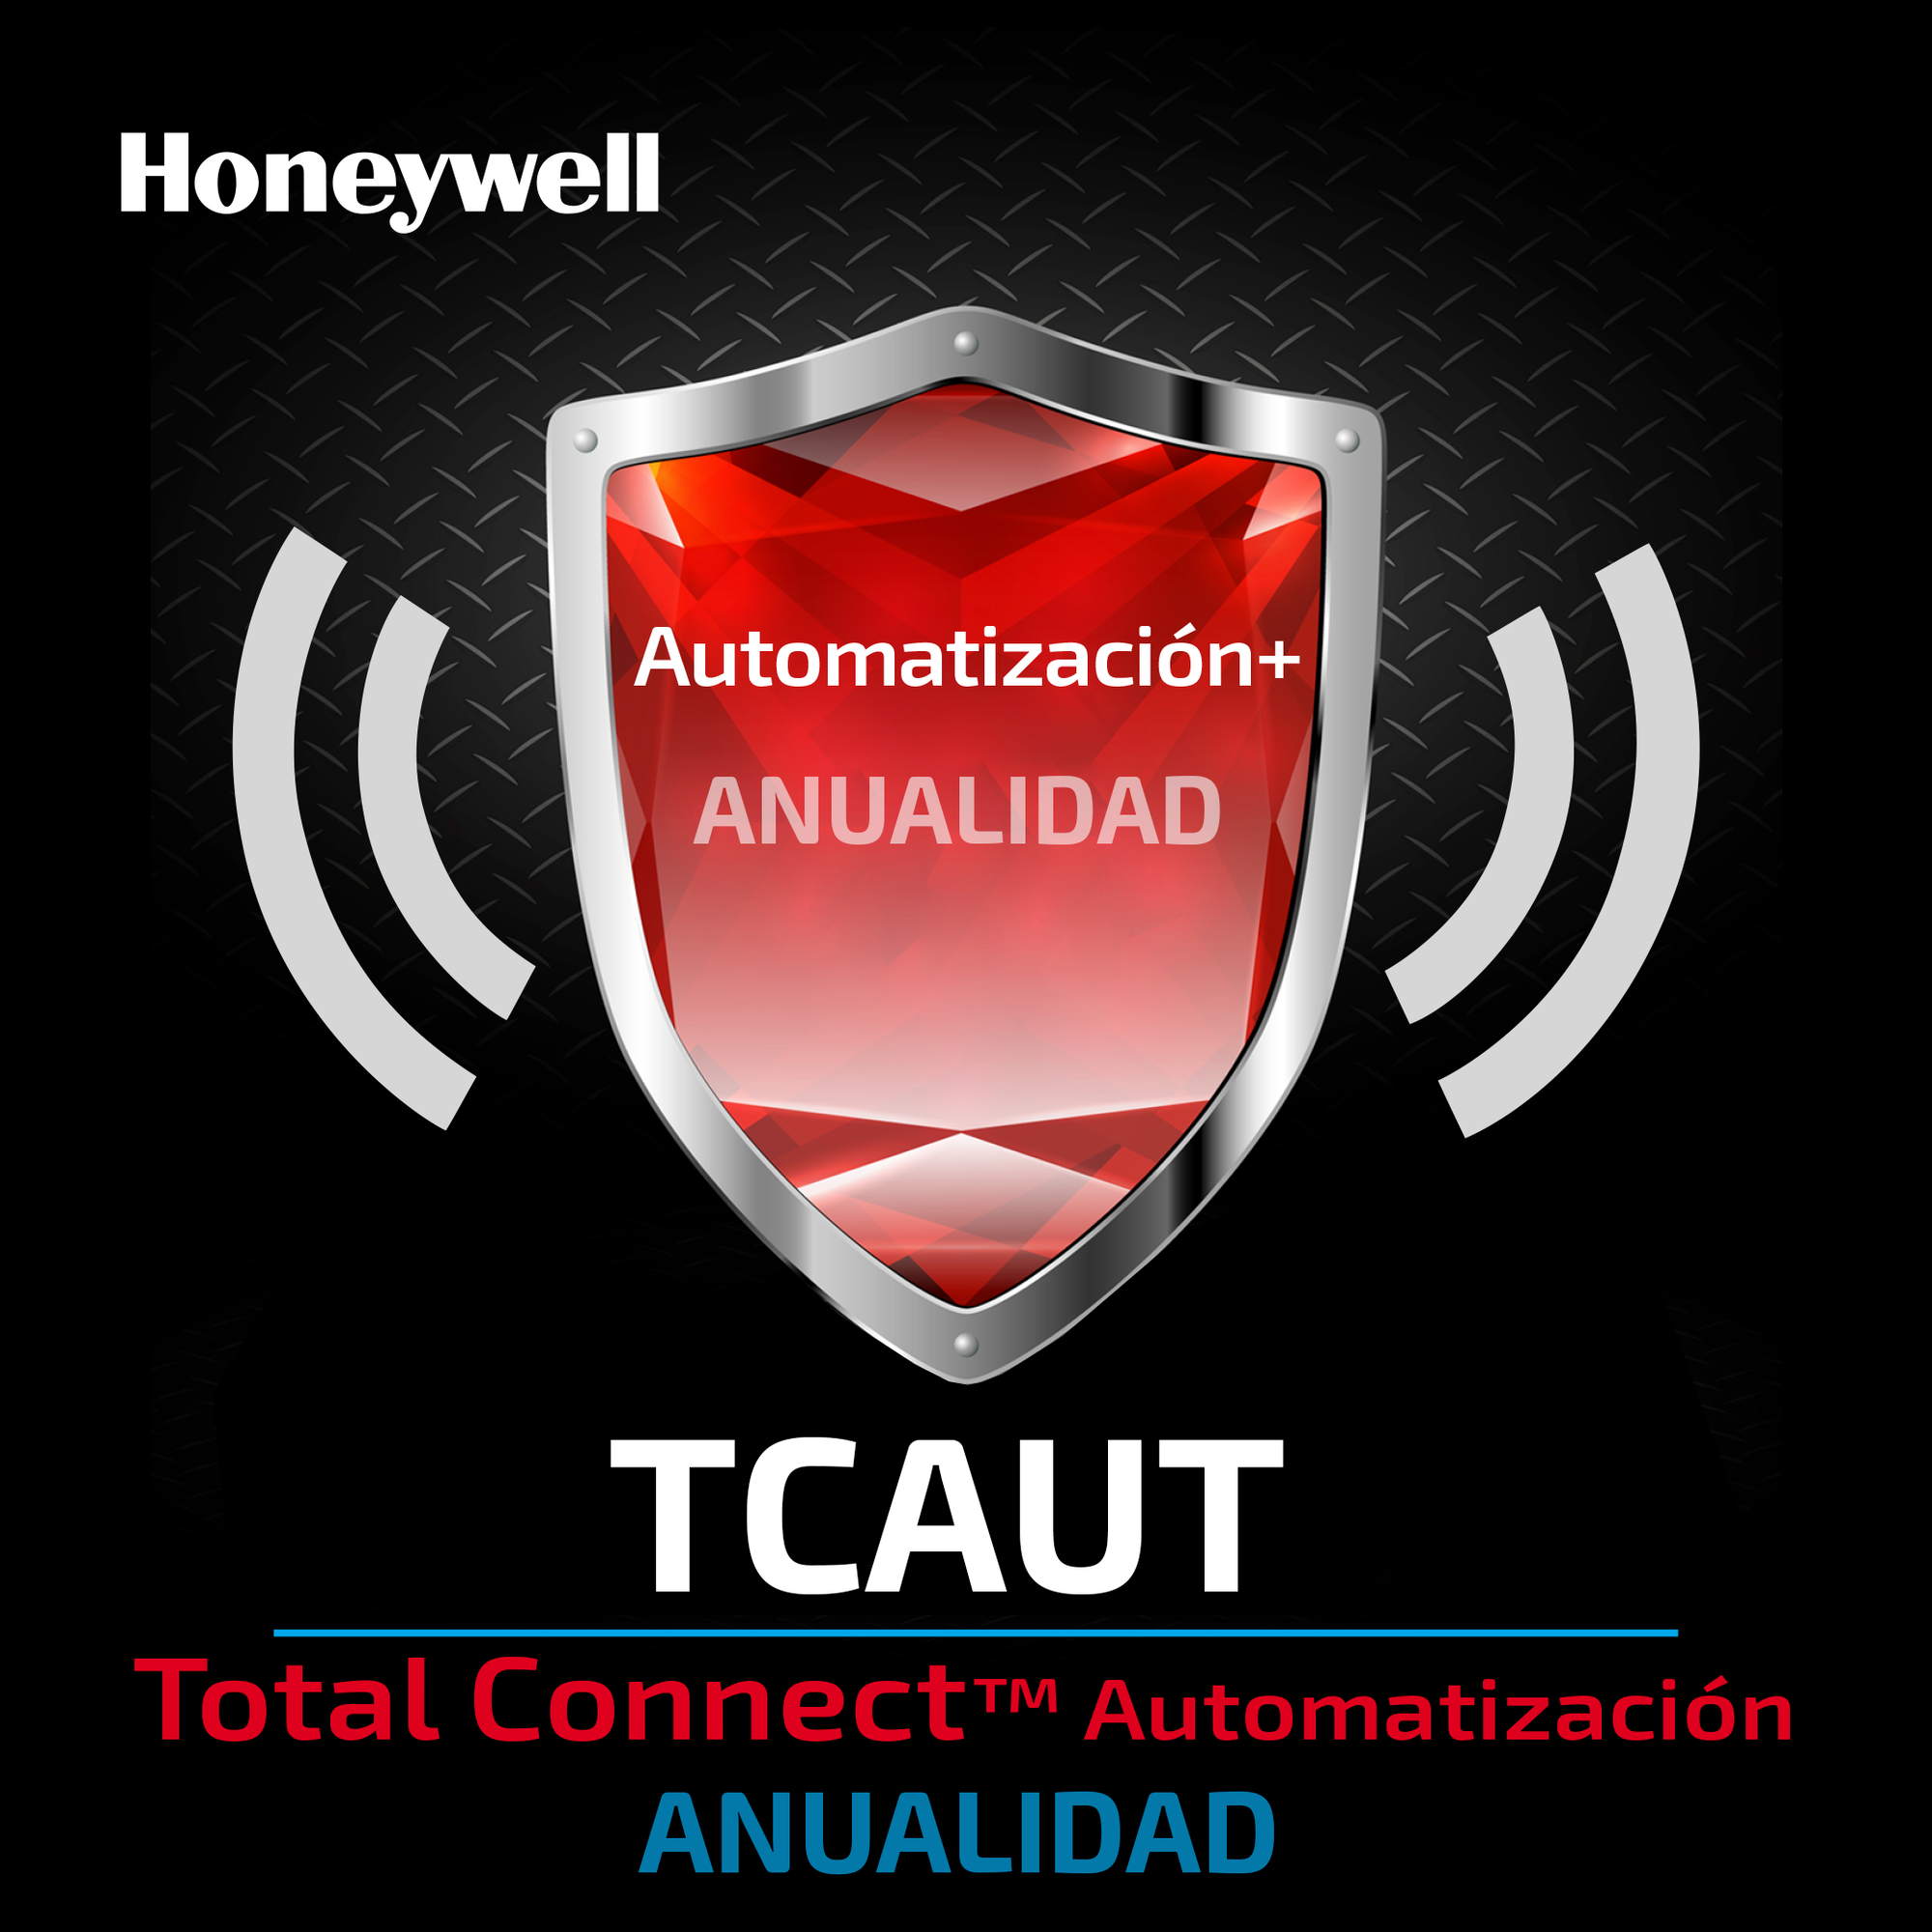 Servicio Anual para Automatización desde App Total Connect de Honeywell